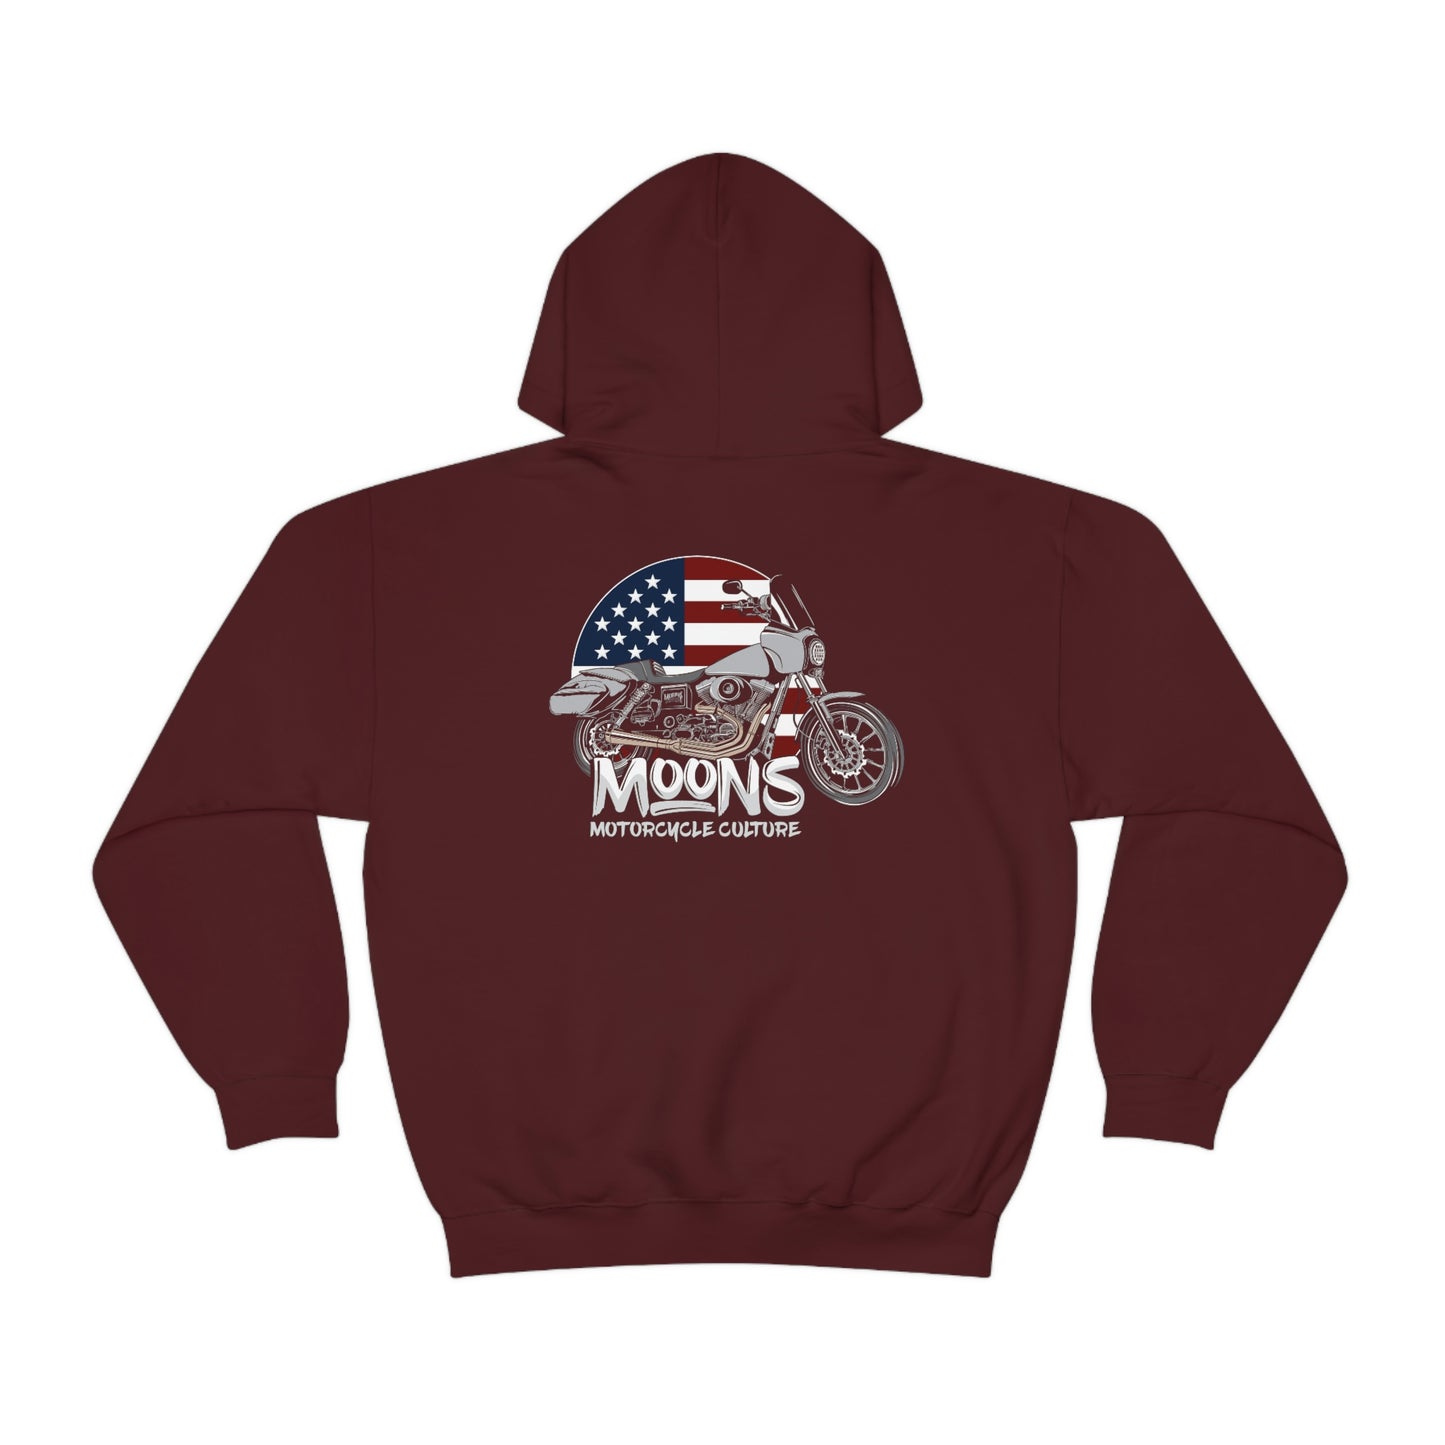 MOONSMC® FXDT / T-SPORT MURICA Hooded Sweatshirt